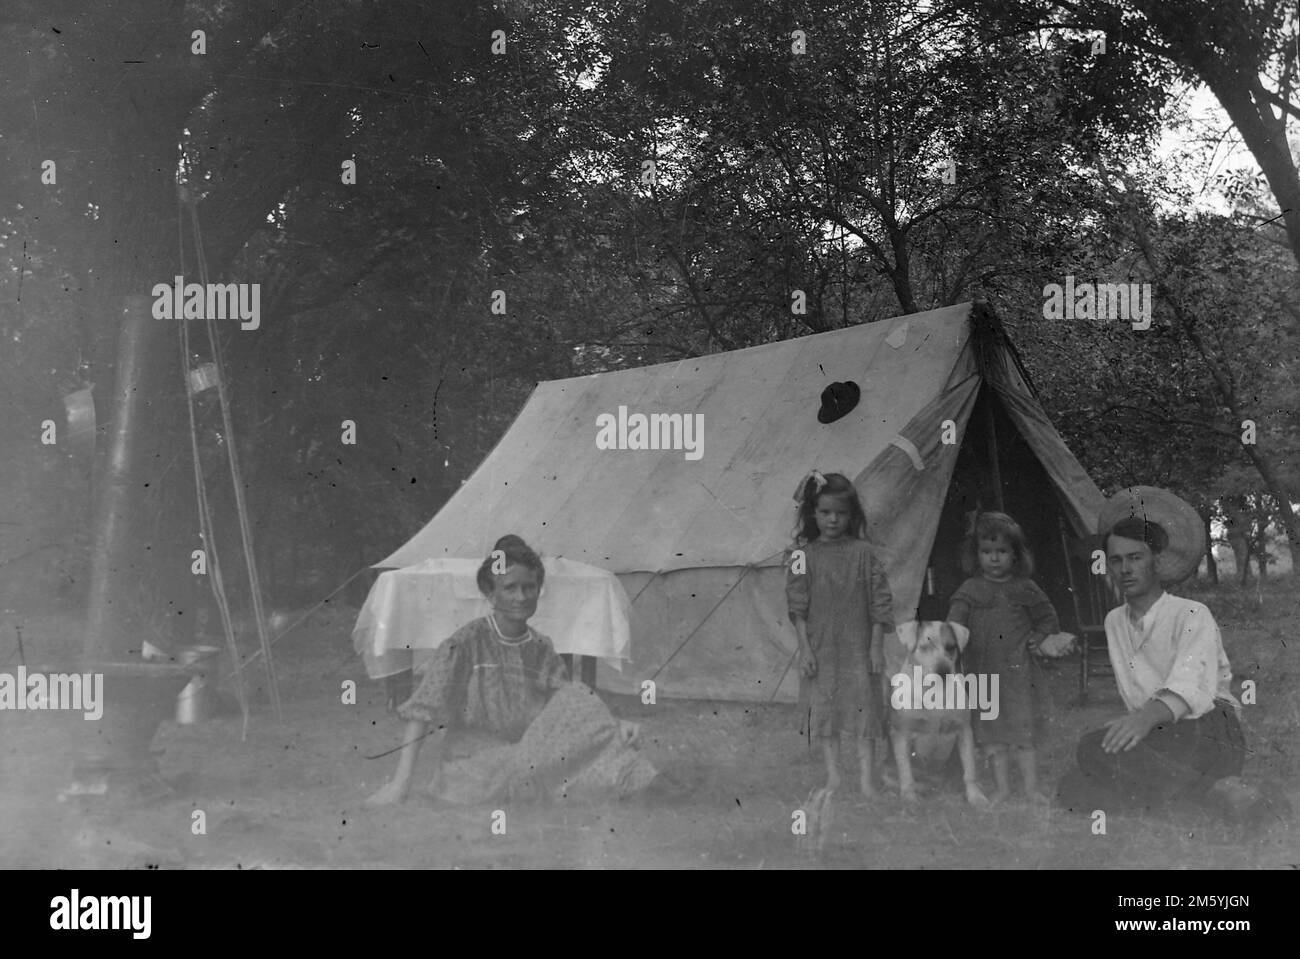 Family camping, ca. 1905. Stock Photo